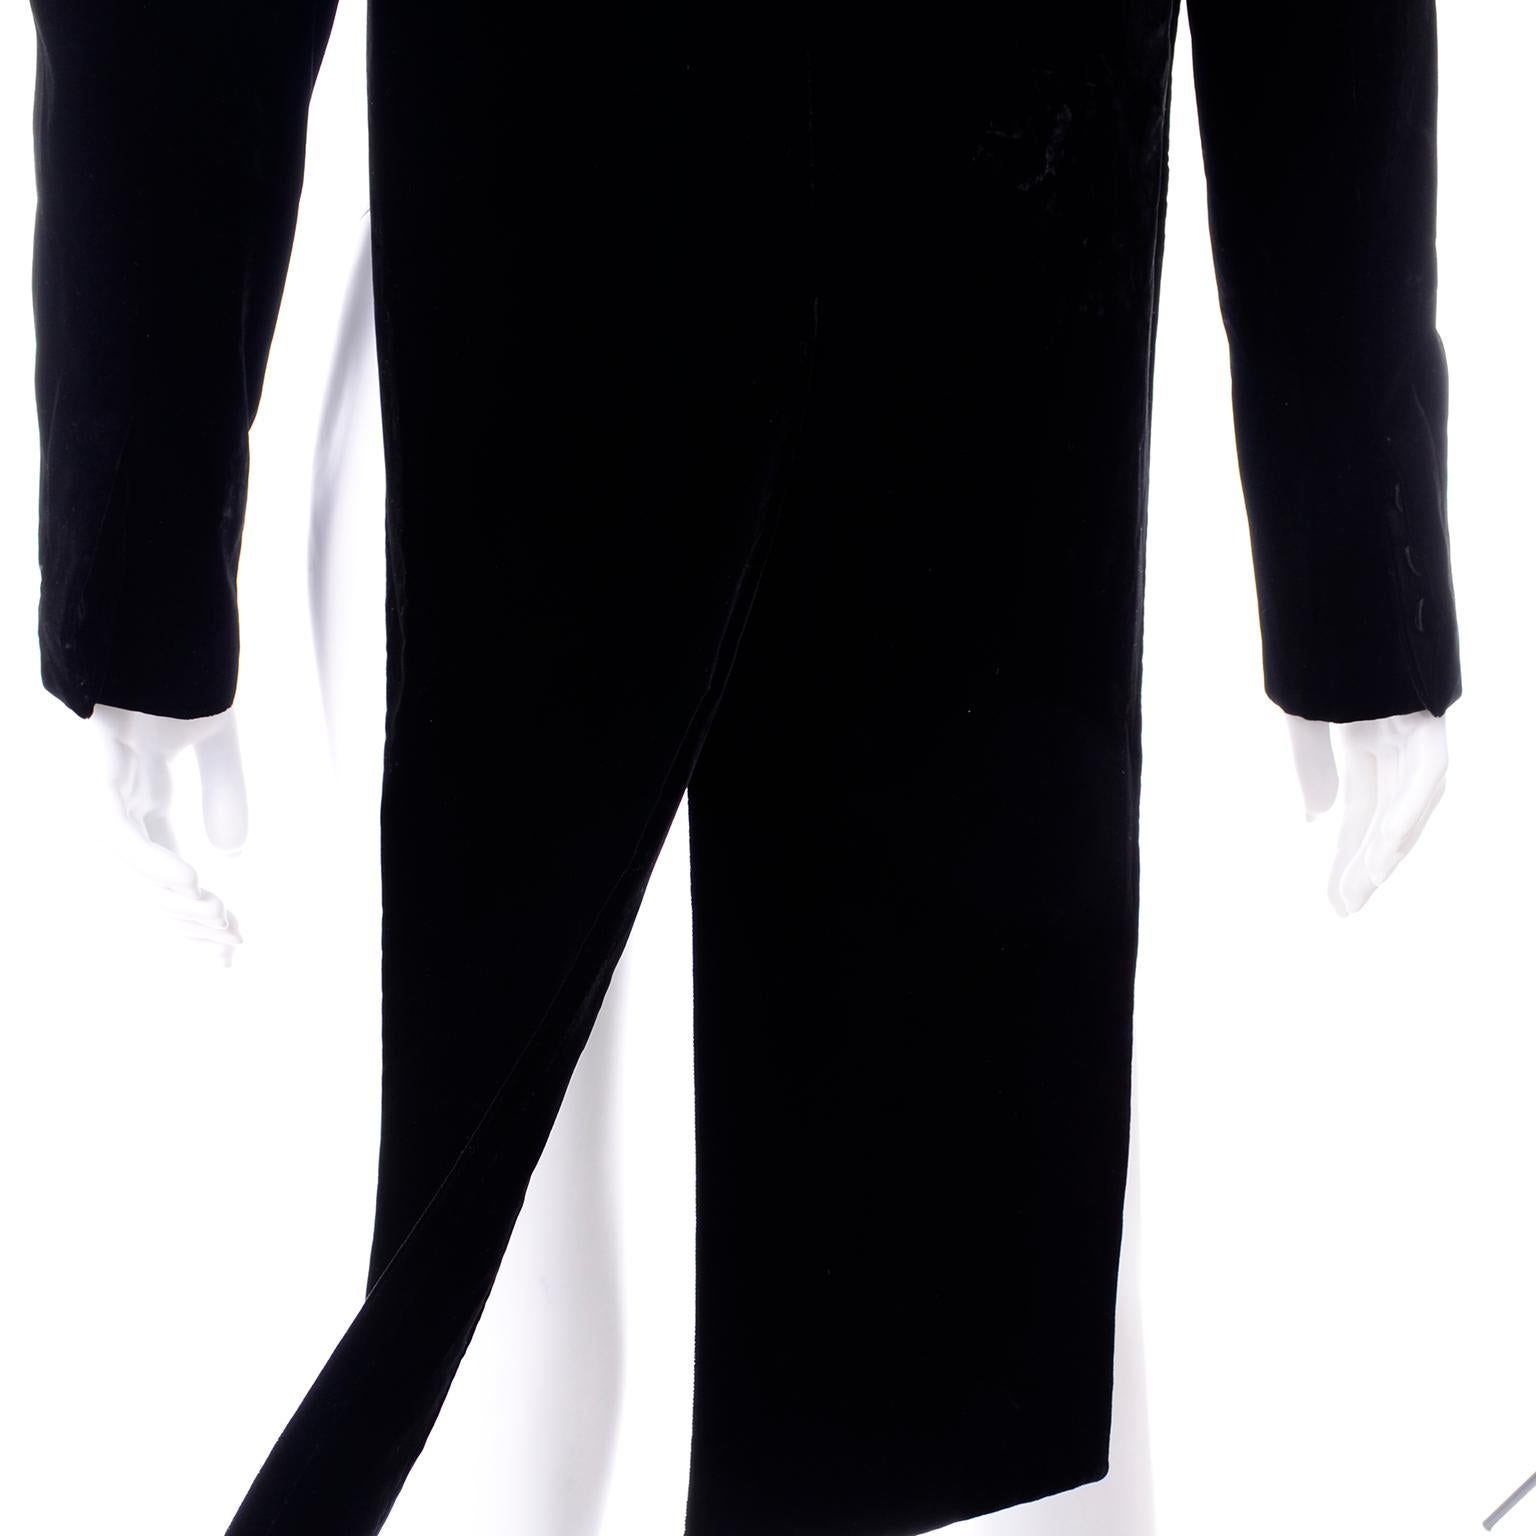 tuxedo jacket with tails